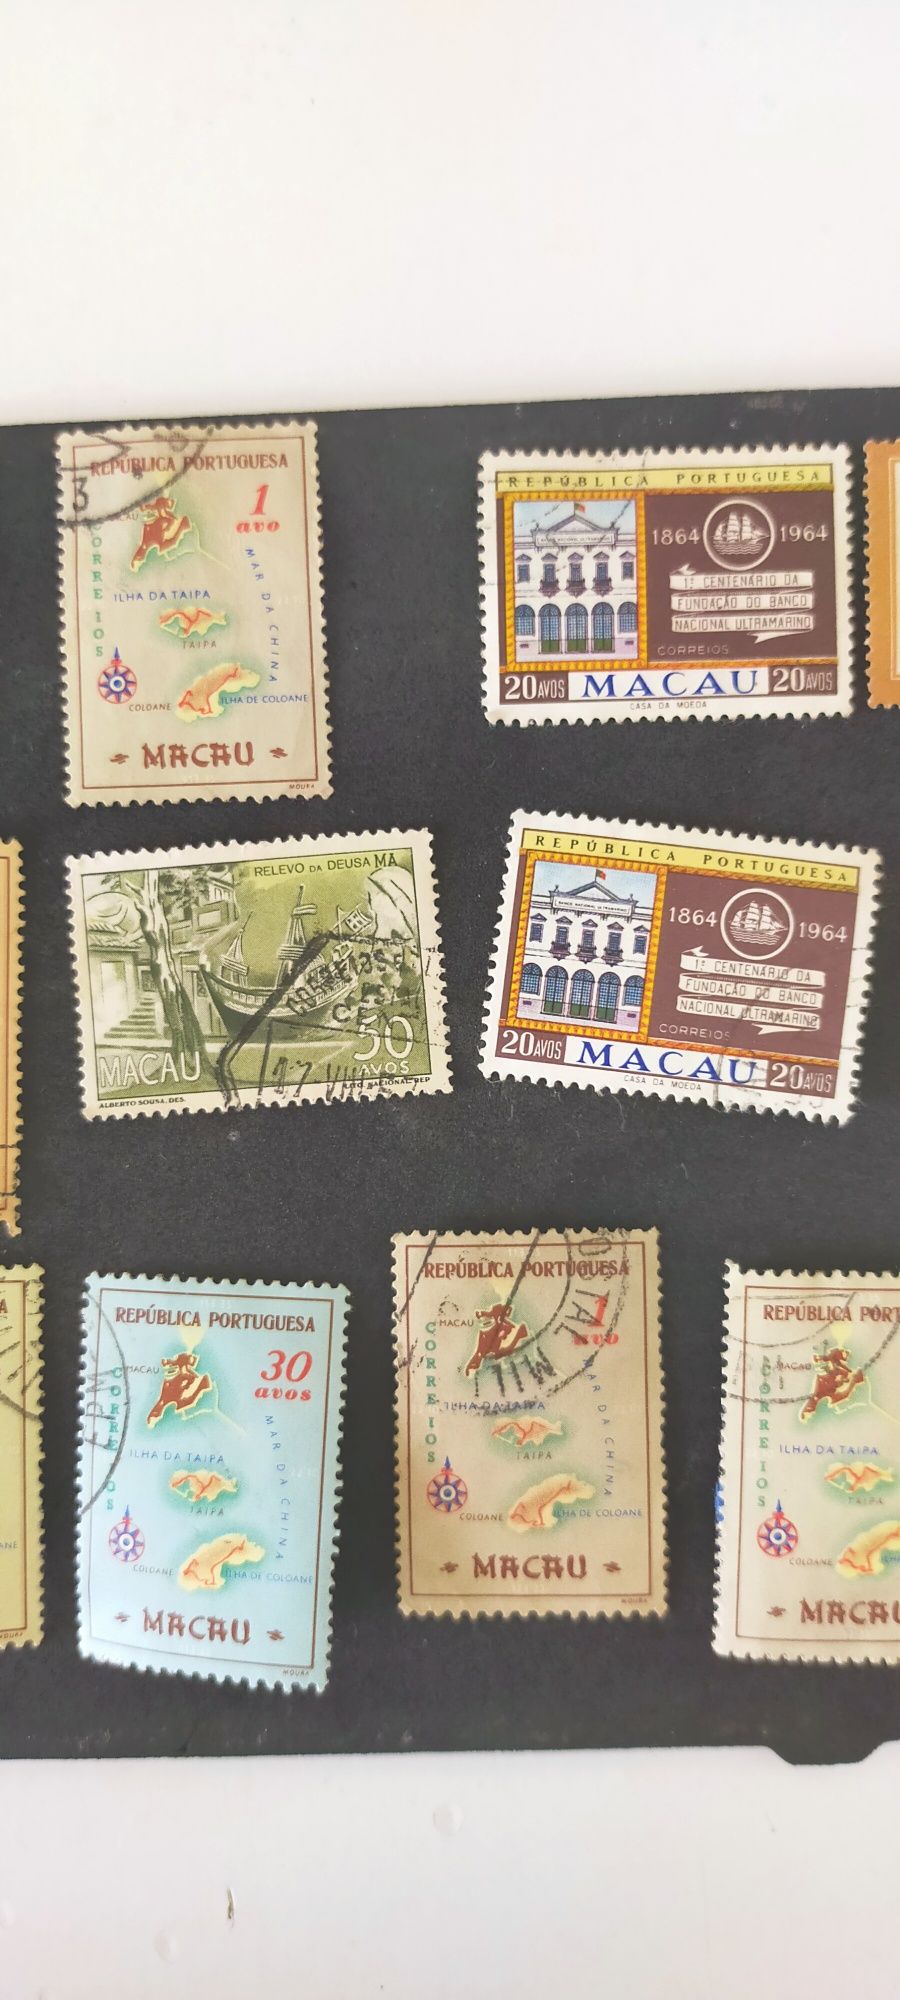 Vendo selos antigos de Macau